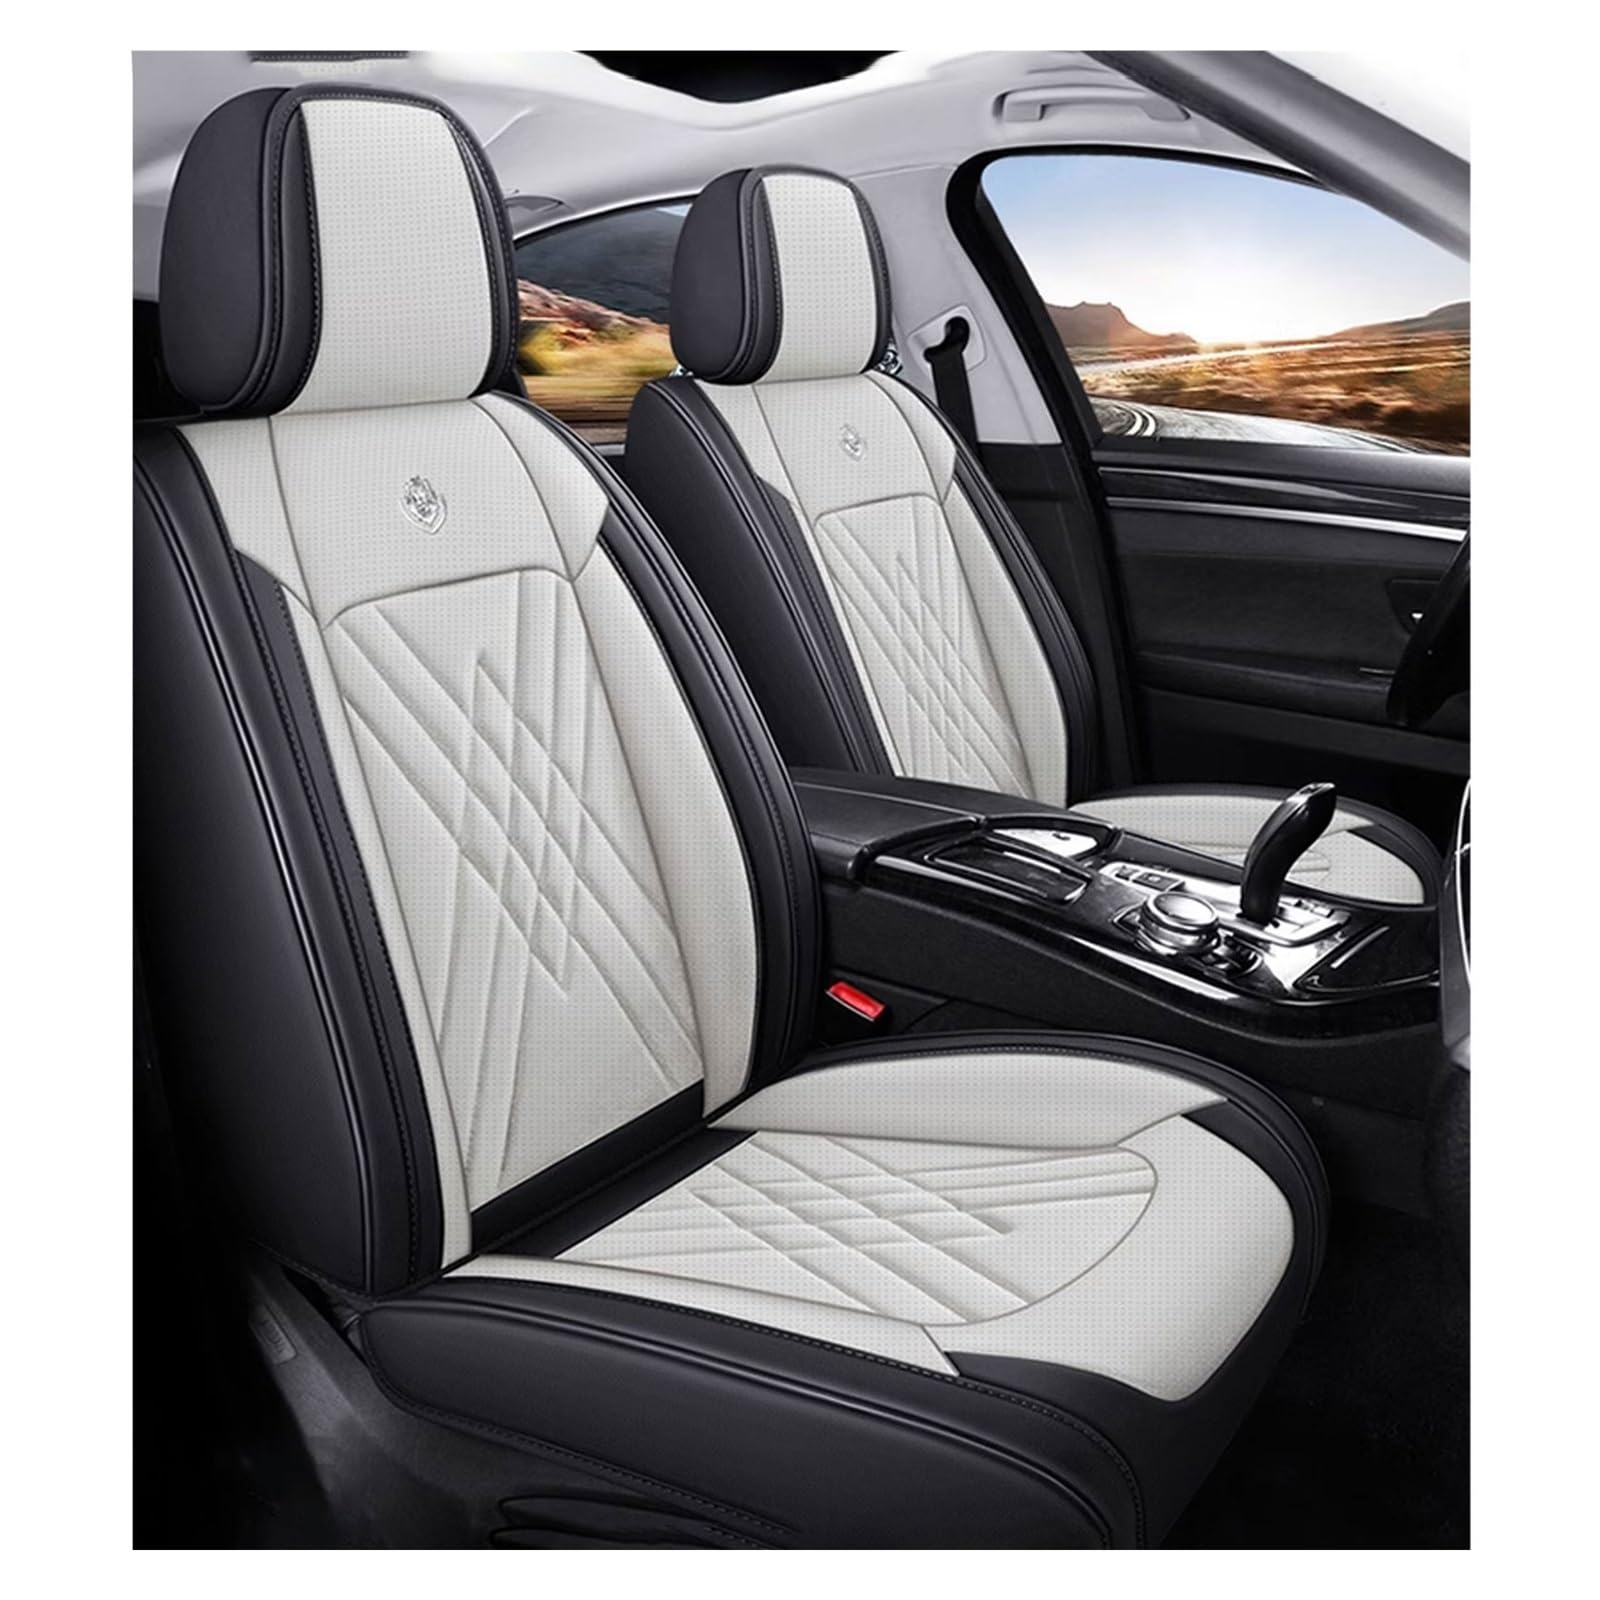 WEBOL Universal-Sitzbezug Komplett-Set Für Dodge Caliber SRT4, AutositzbezüGe Set Leder, 5-Sitze Universal-SitzbezüGe Auto Komplettset(C) von WEBOL